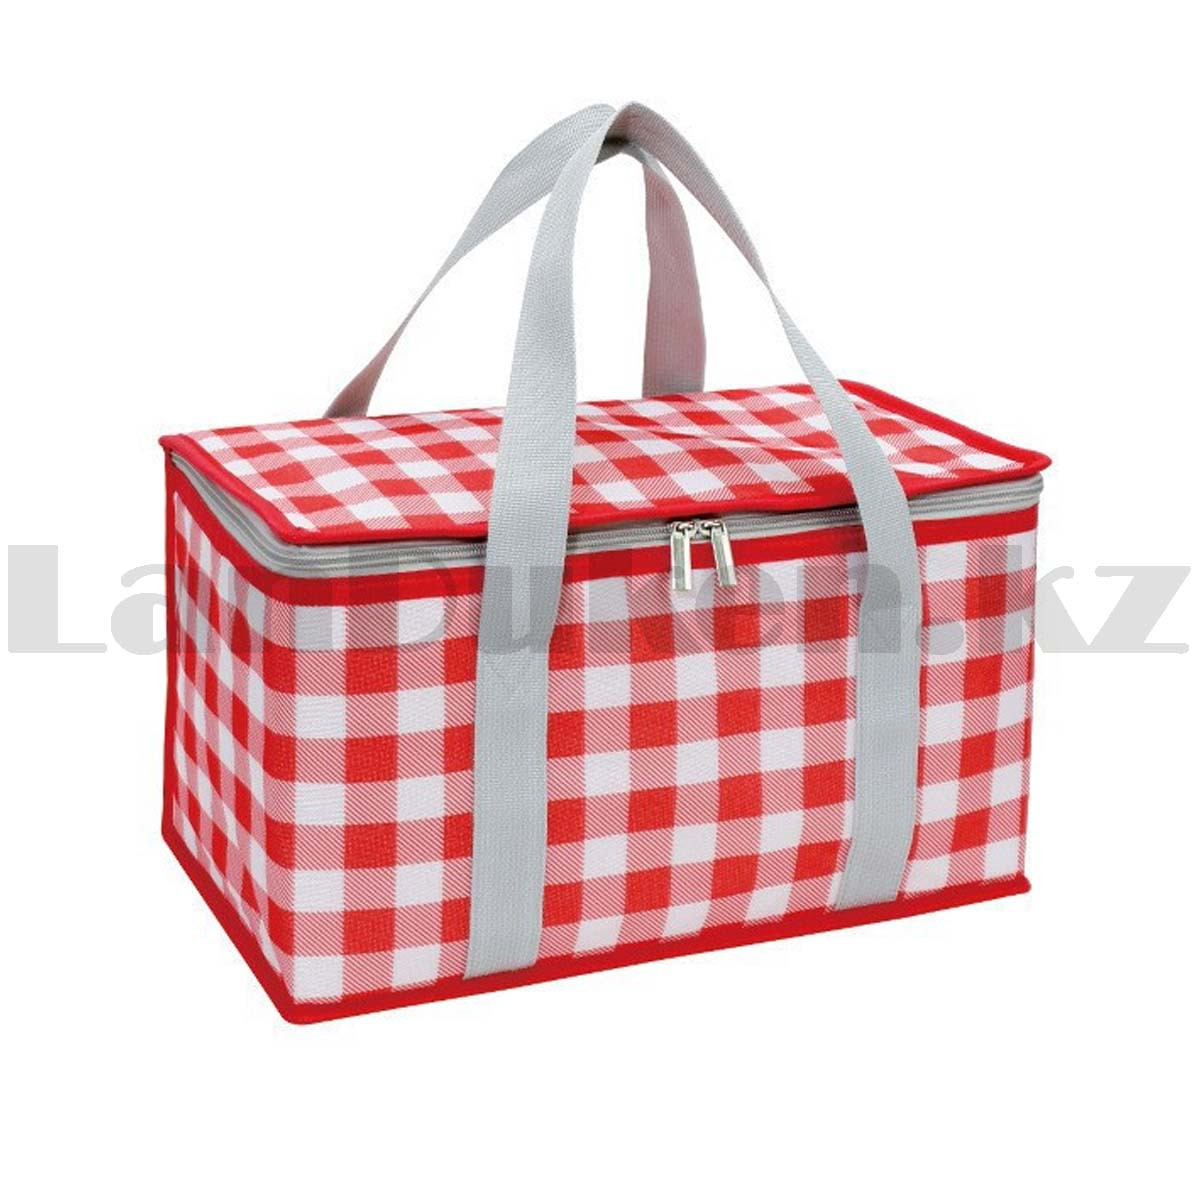 Корзинка-сумка для пикника холодильник ПВХ 35х20х20 красная